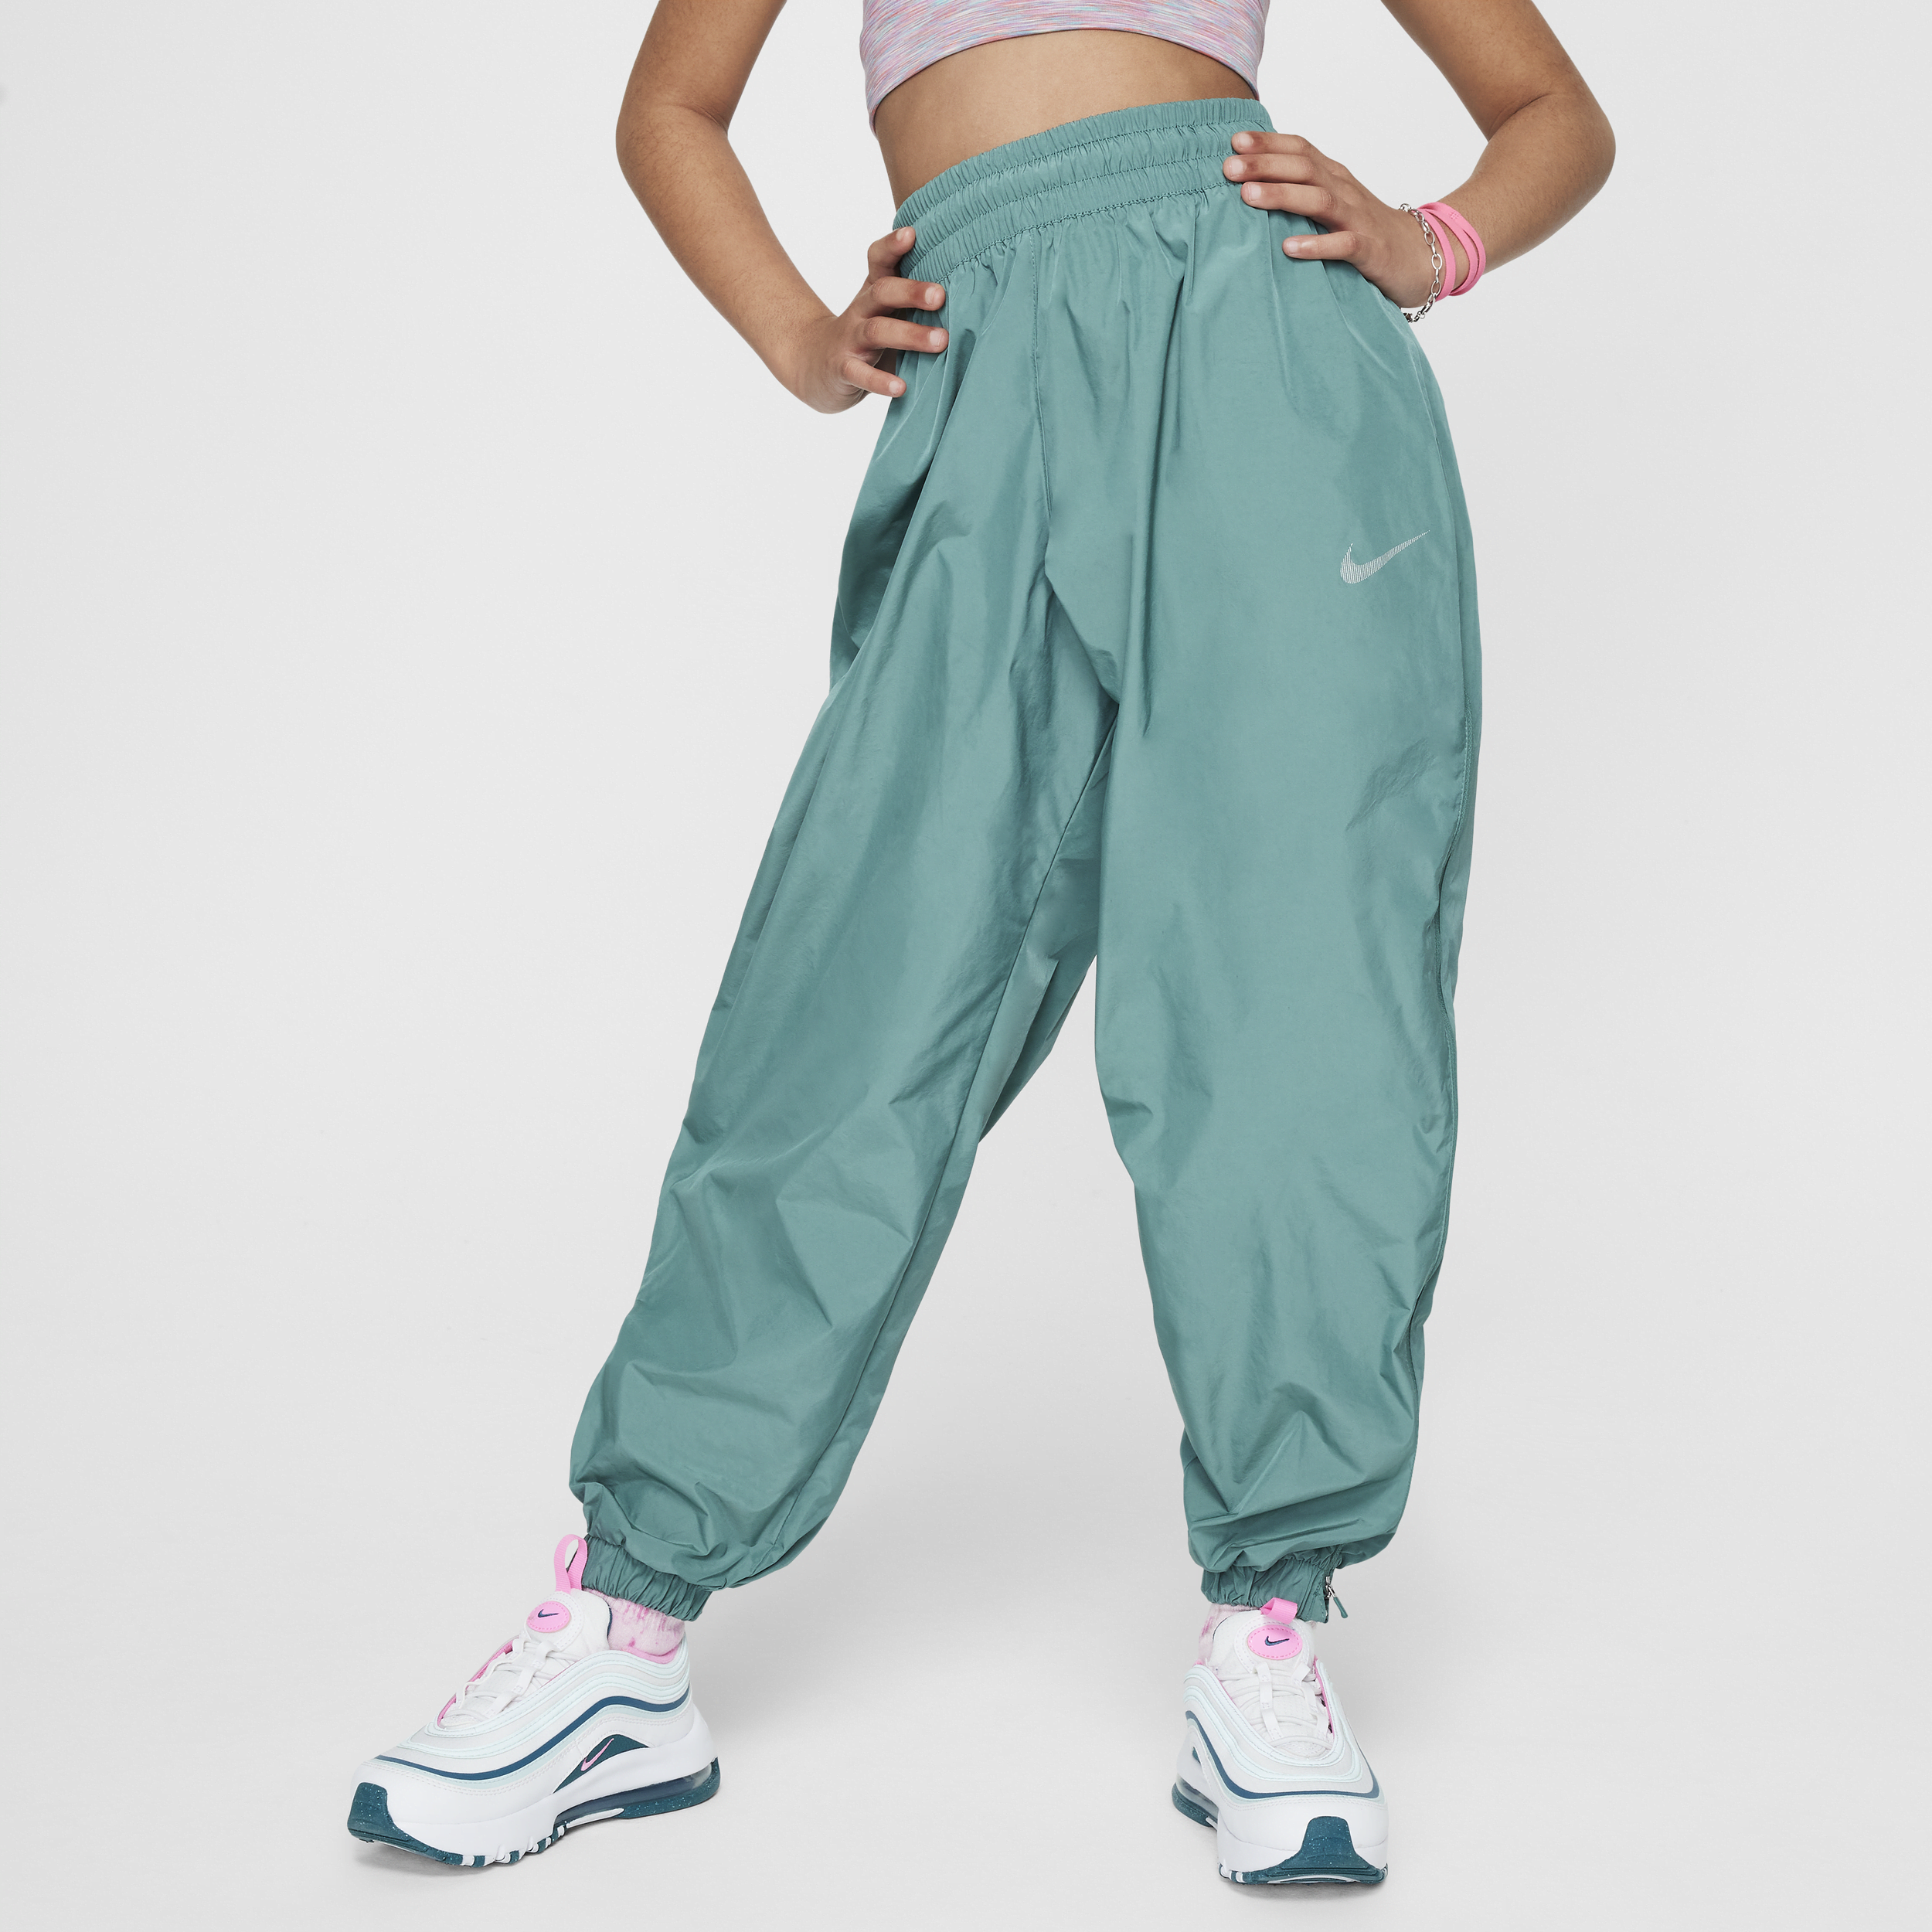 Nike Sportswear geweven meisjesbroek Groen